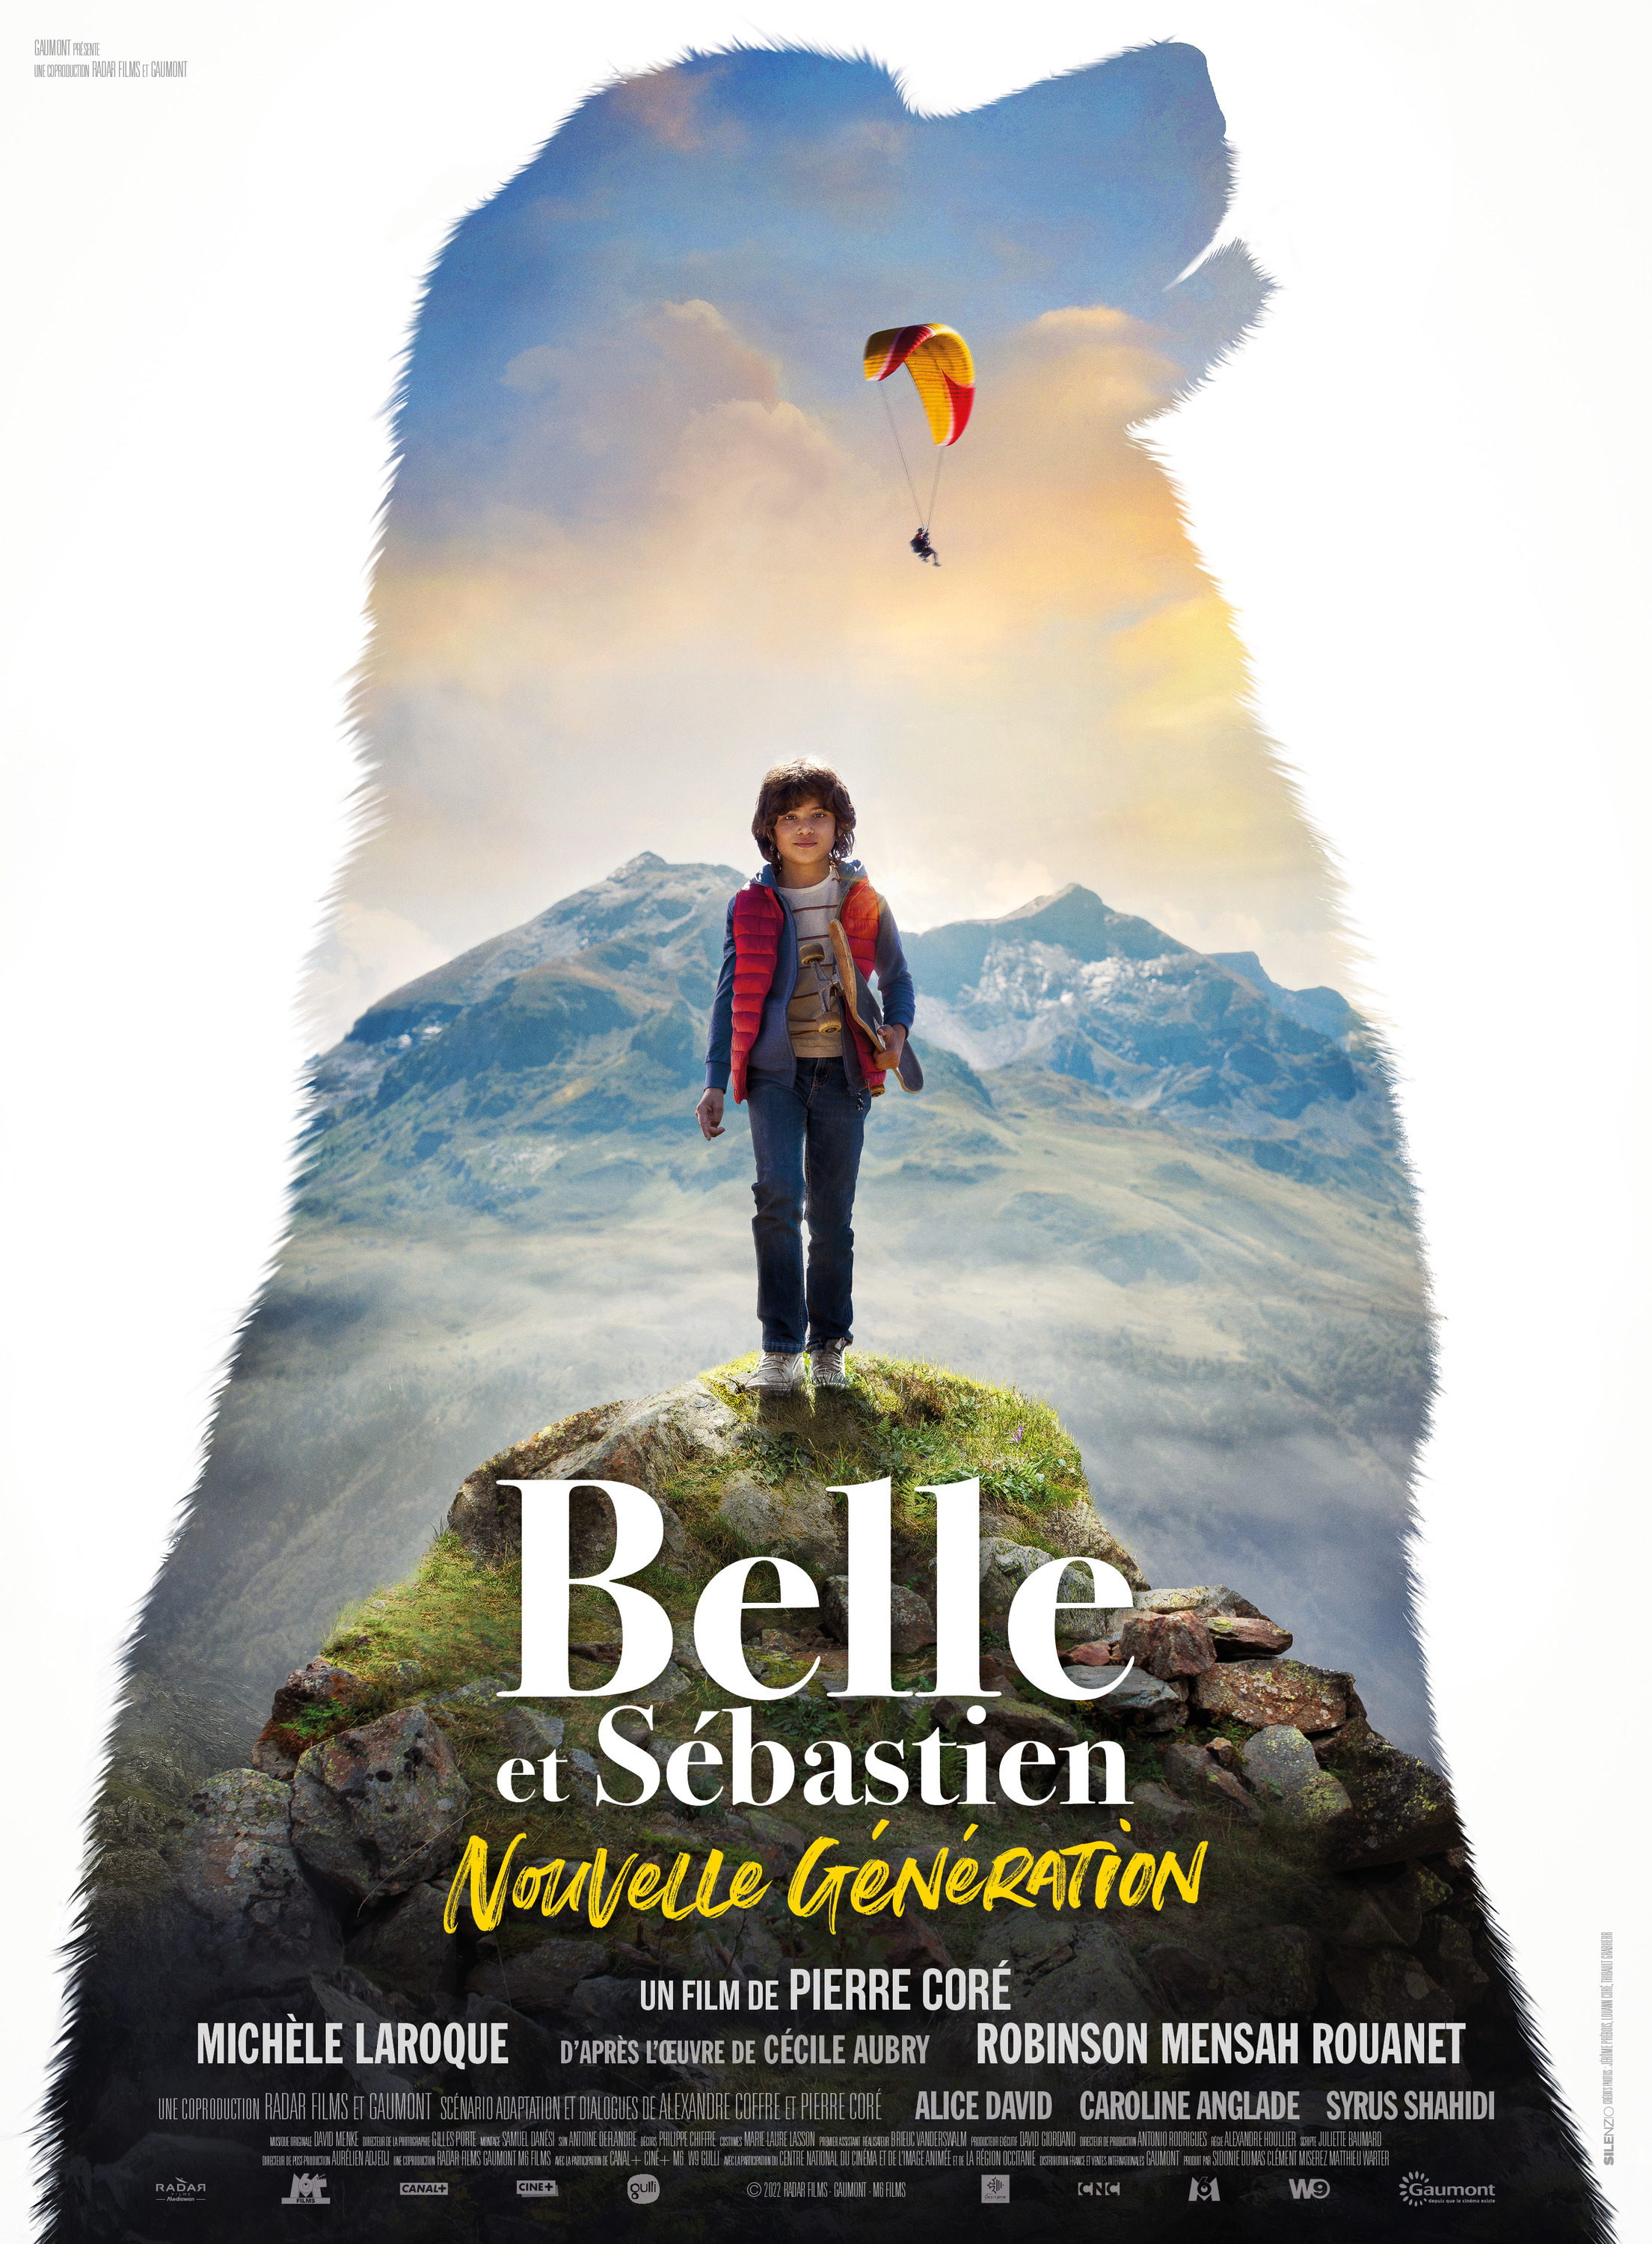 Mega Sized Movie Poster Image for Belle et Sébastien: Nouvelle génération 